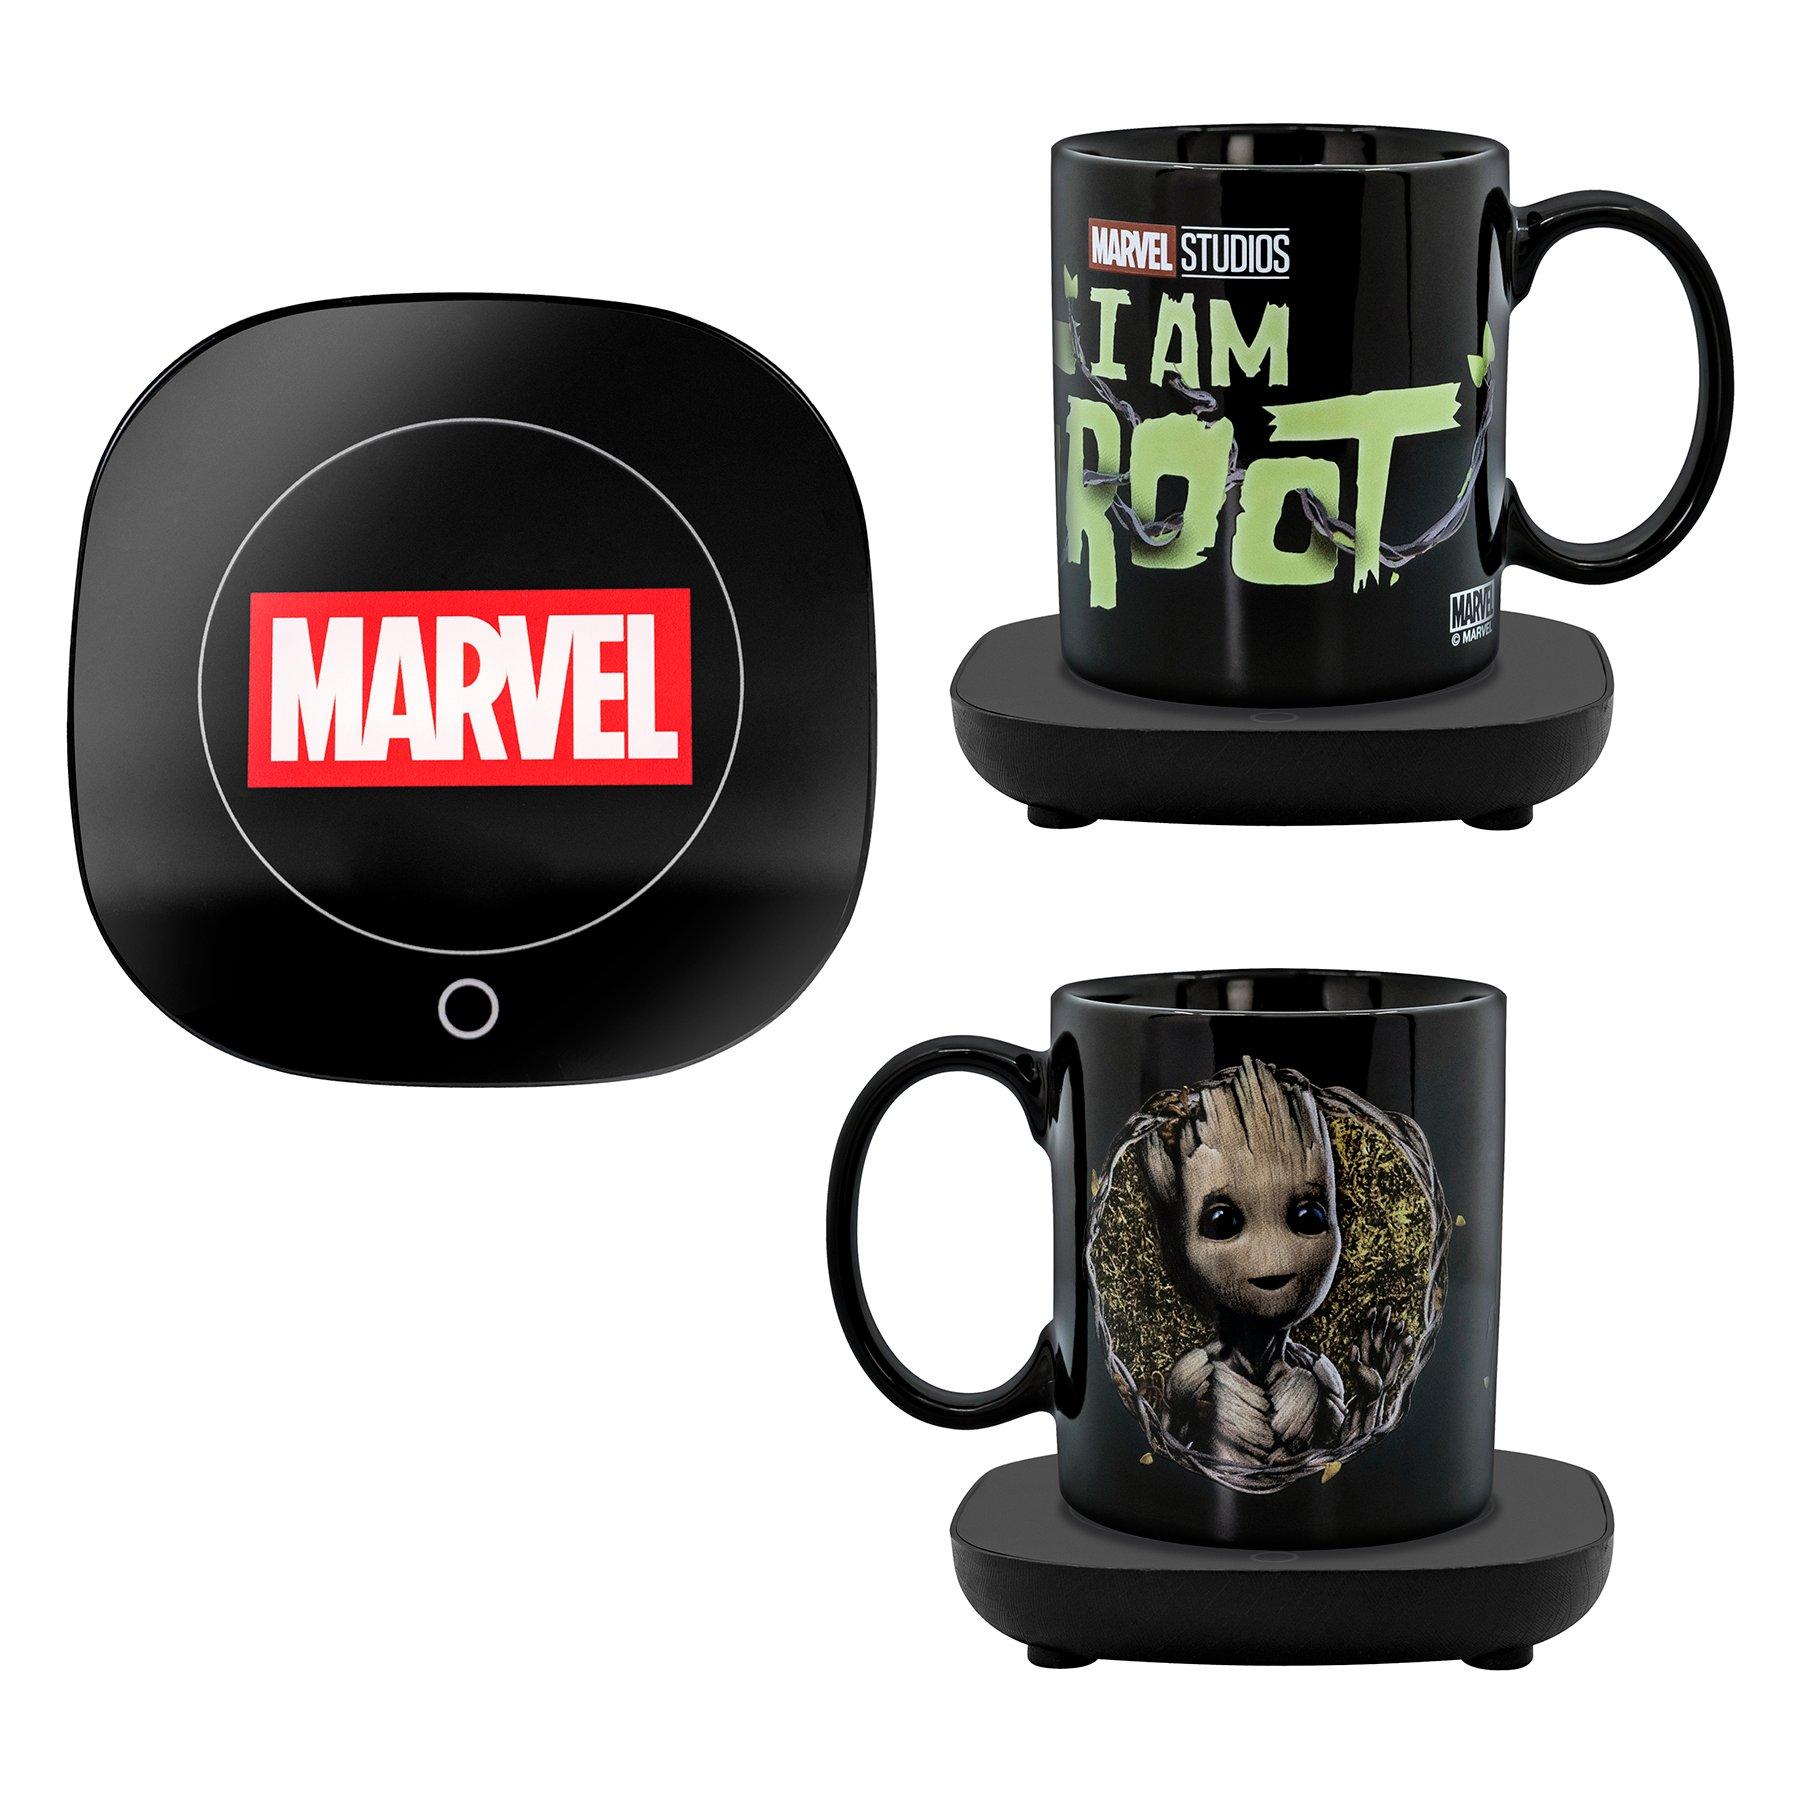 https://media.gamestop.com/i/gamestop/20005558/Marvels-I-Am-Groot-Mug-Warmer-with-Mug